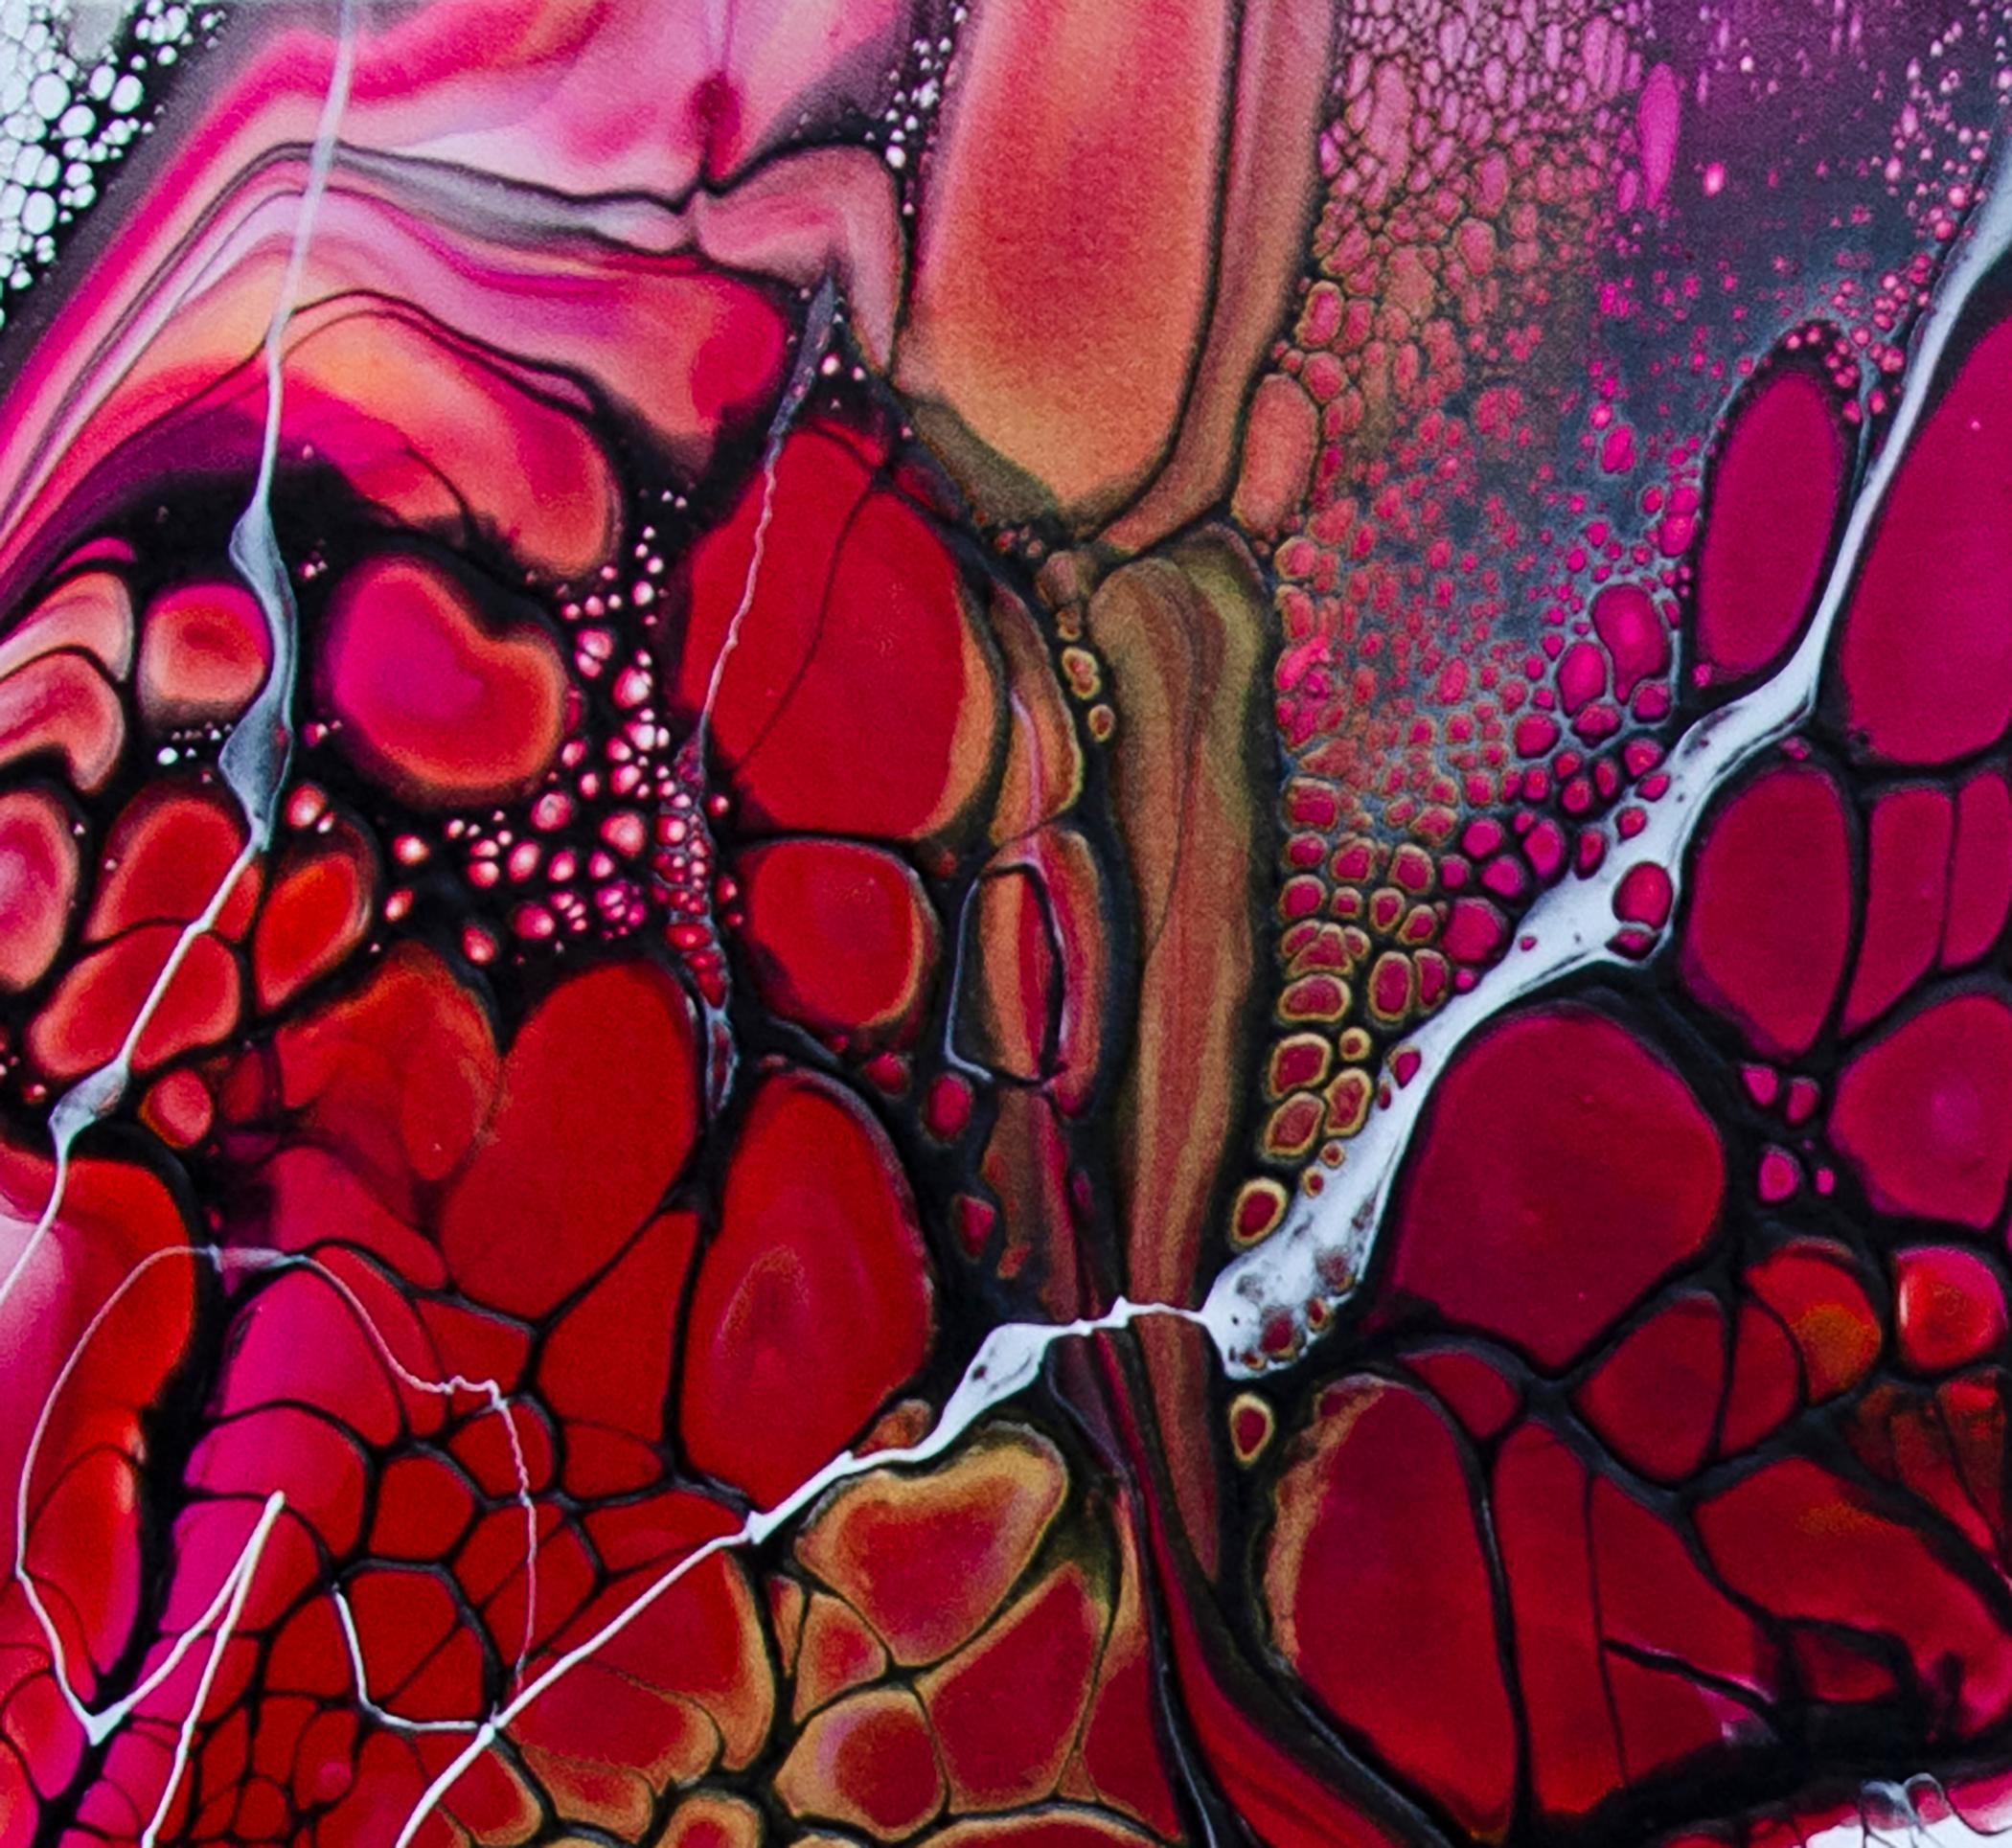 <p>Kommentare des KünstlersDieses abstrakte Gemälde zeigt leuchtende Rot-, Pink- und Orangetöne.<br> Schwarze Zellen formen organische Formen, die der Komposition ein Gefühl von Fluidität und dynamischer Energie verleihen. Das mit der